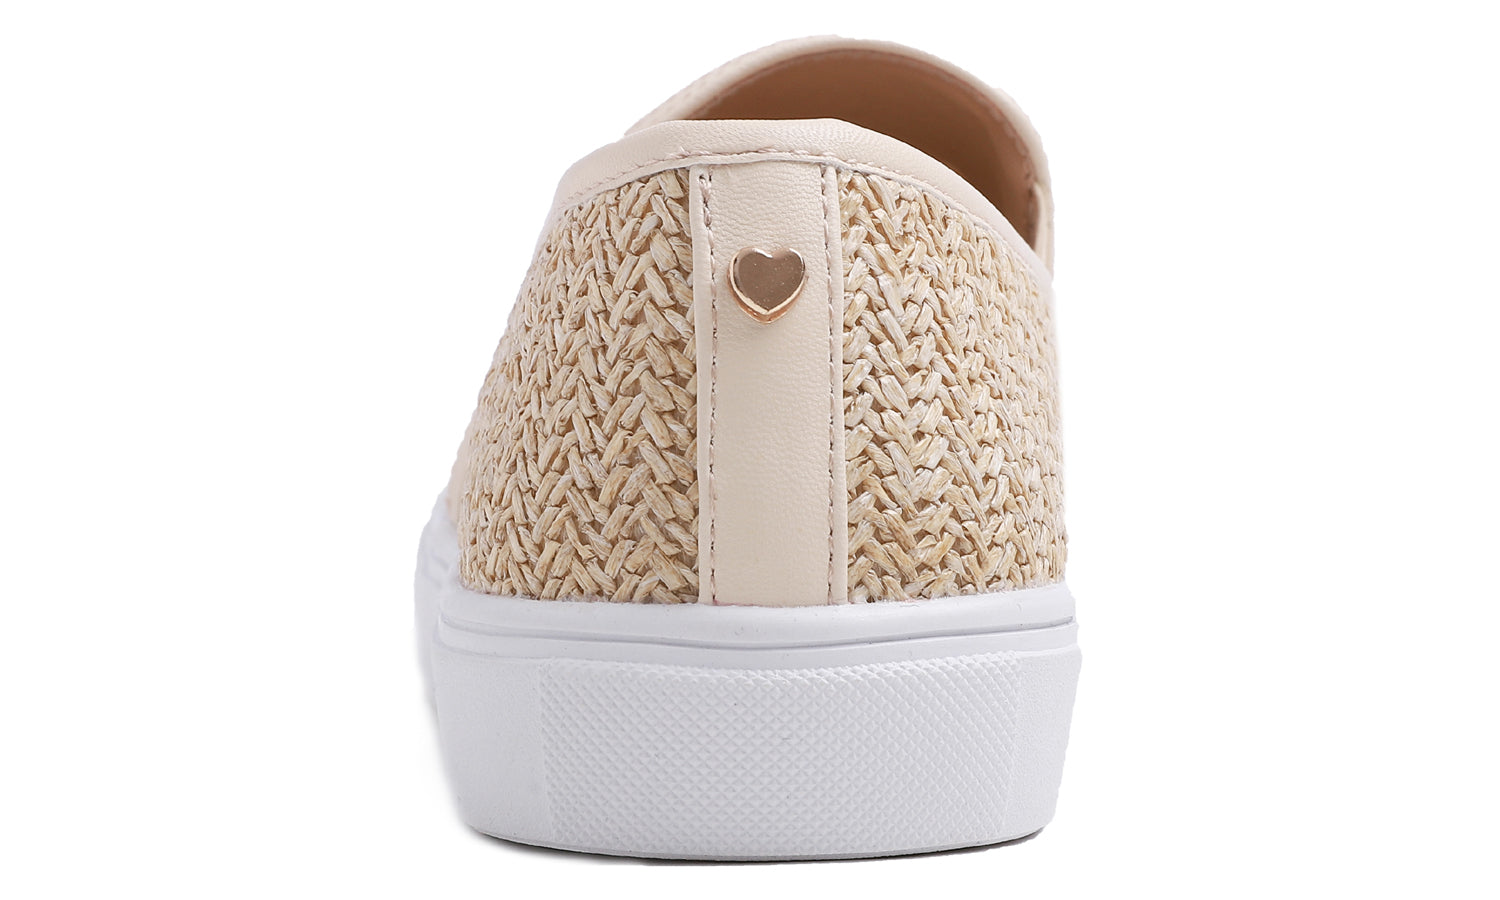 Feversole Women's Raffia Beige Slip On Sneaker Casual Flat Loafers